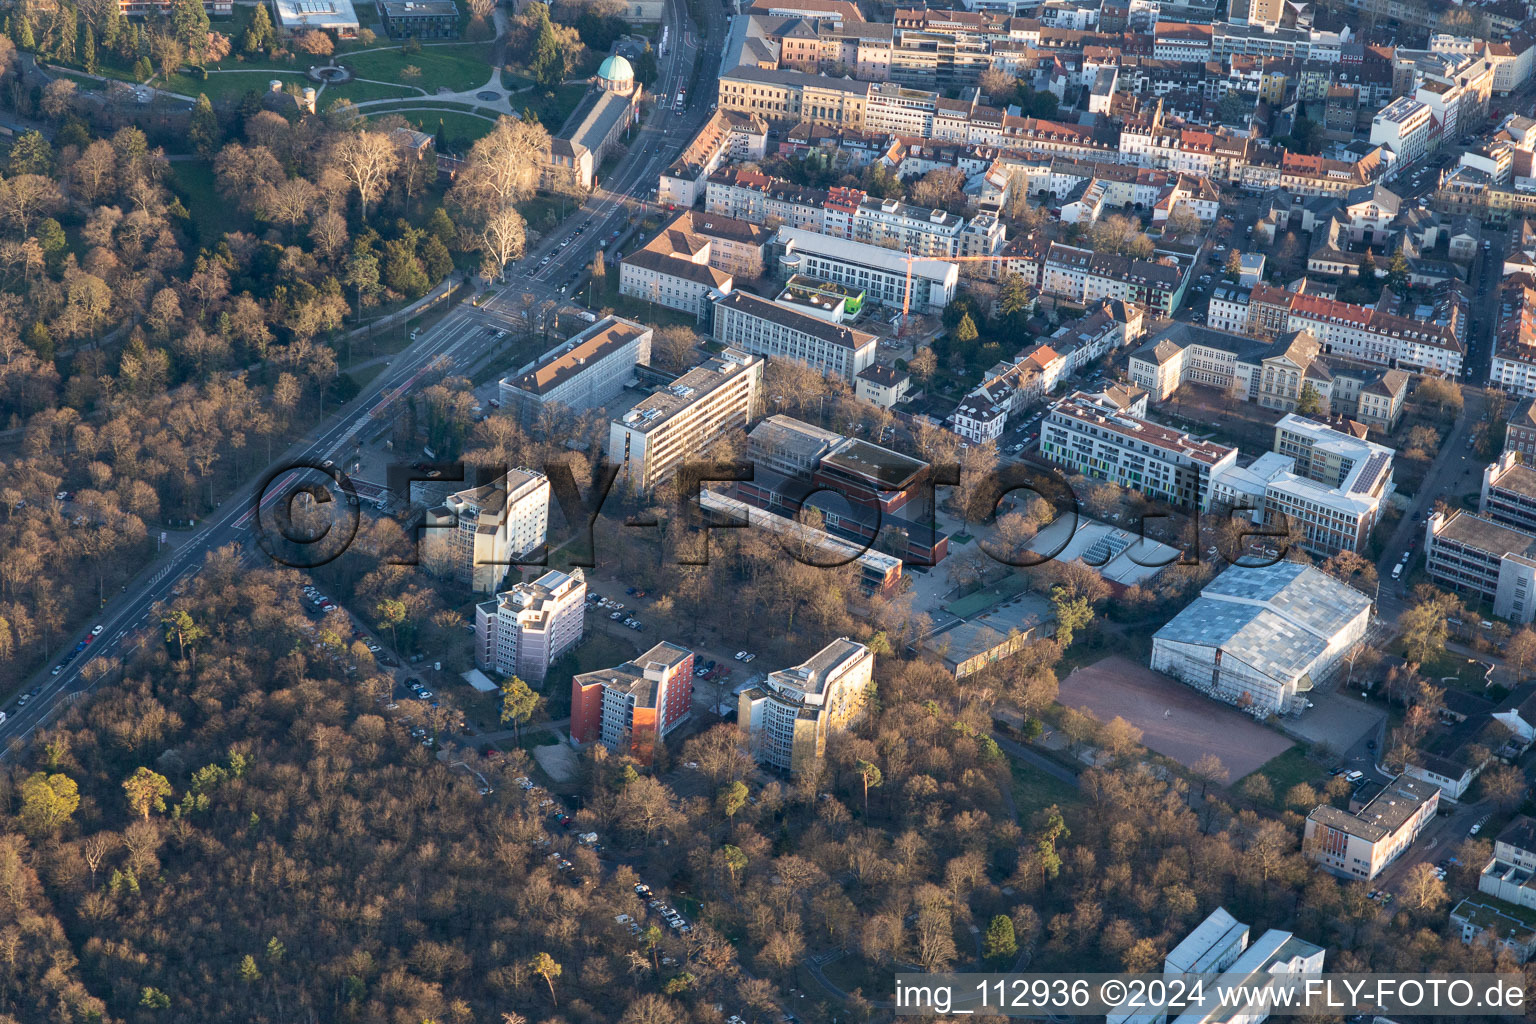 Luftbild von Domus 7, Reinhold-Schneider-Haus, Hermann-Ehlers Kolleg im Ortsteil Innenstadt-West in Karlsruhe im Bundesland Baden-Württemberg, Deutschland